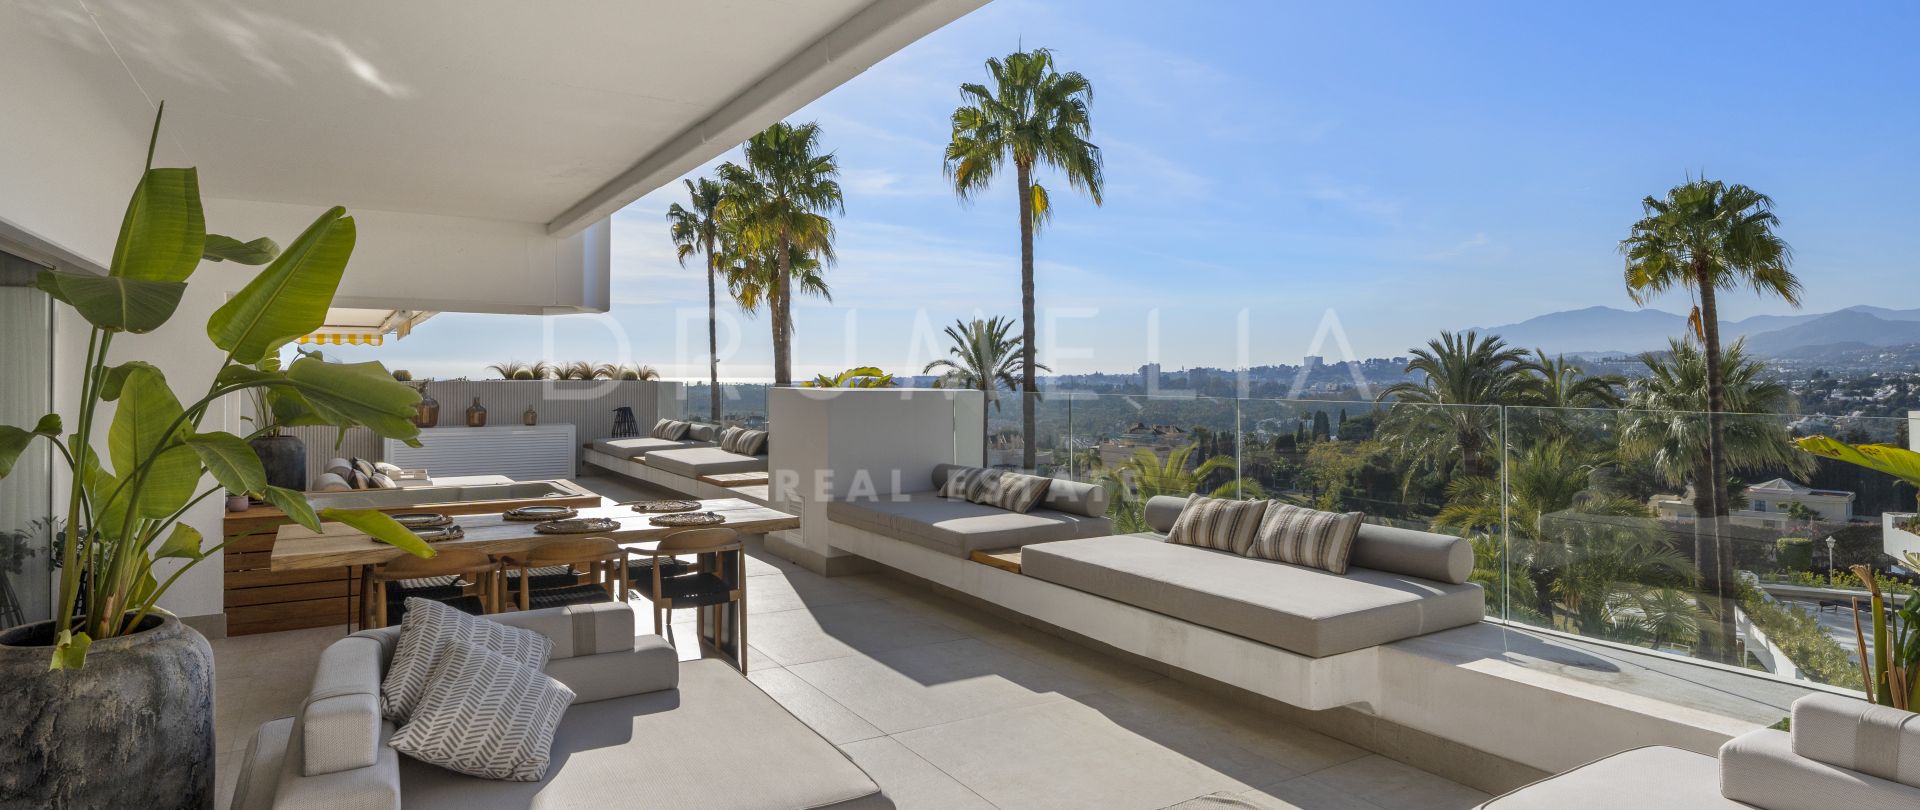 Nowoczesny luksusowy apartament z panoramicznym widokiem w Las Terrazas, Marbella